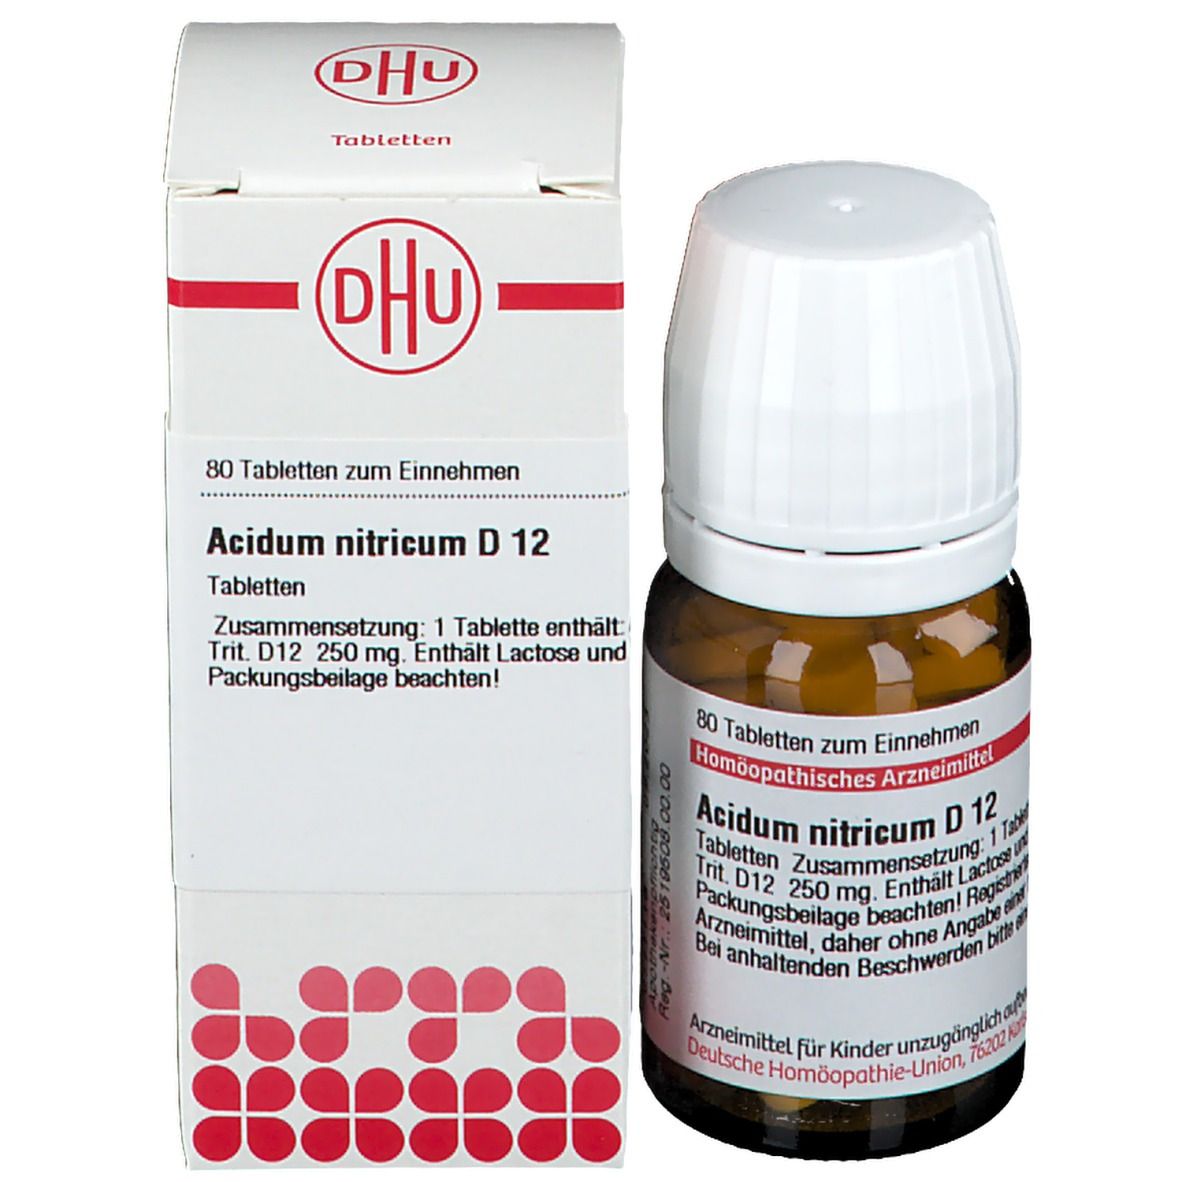 DHU Acidum Nitricum D12